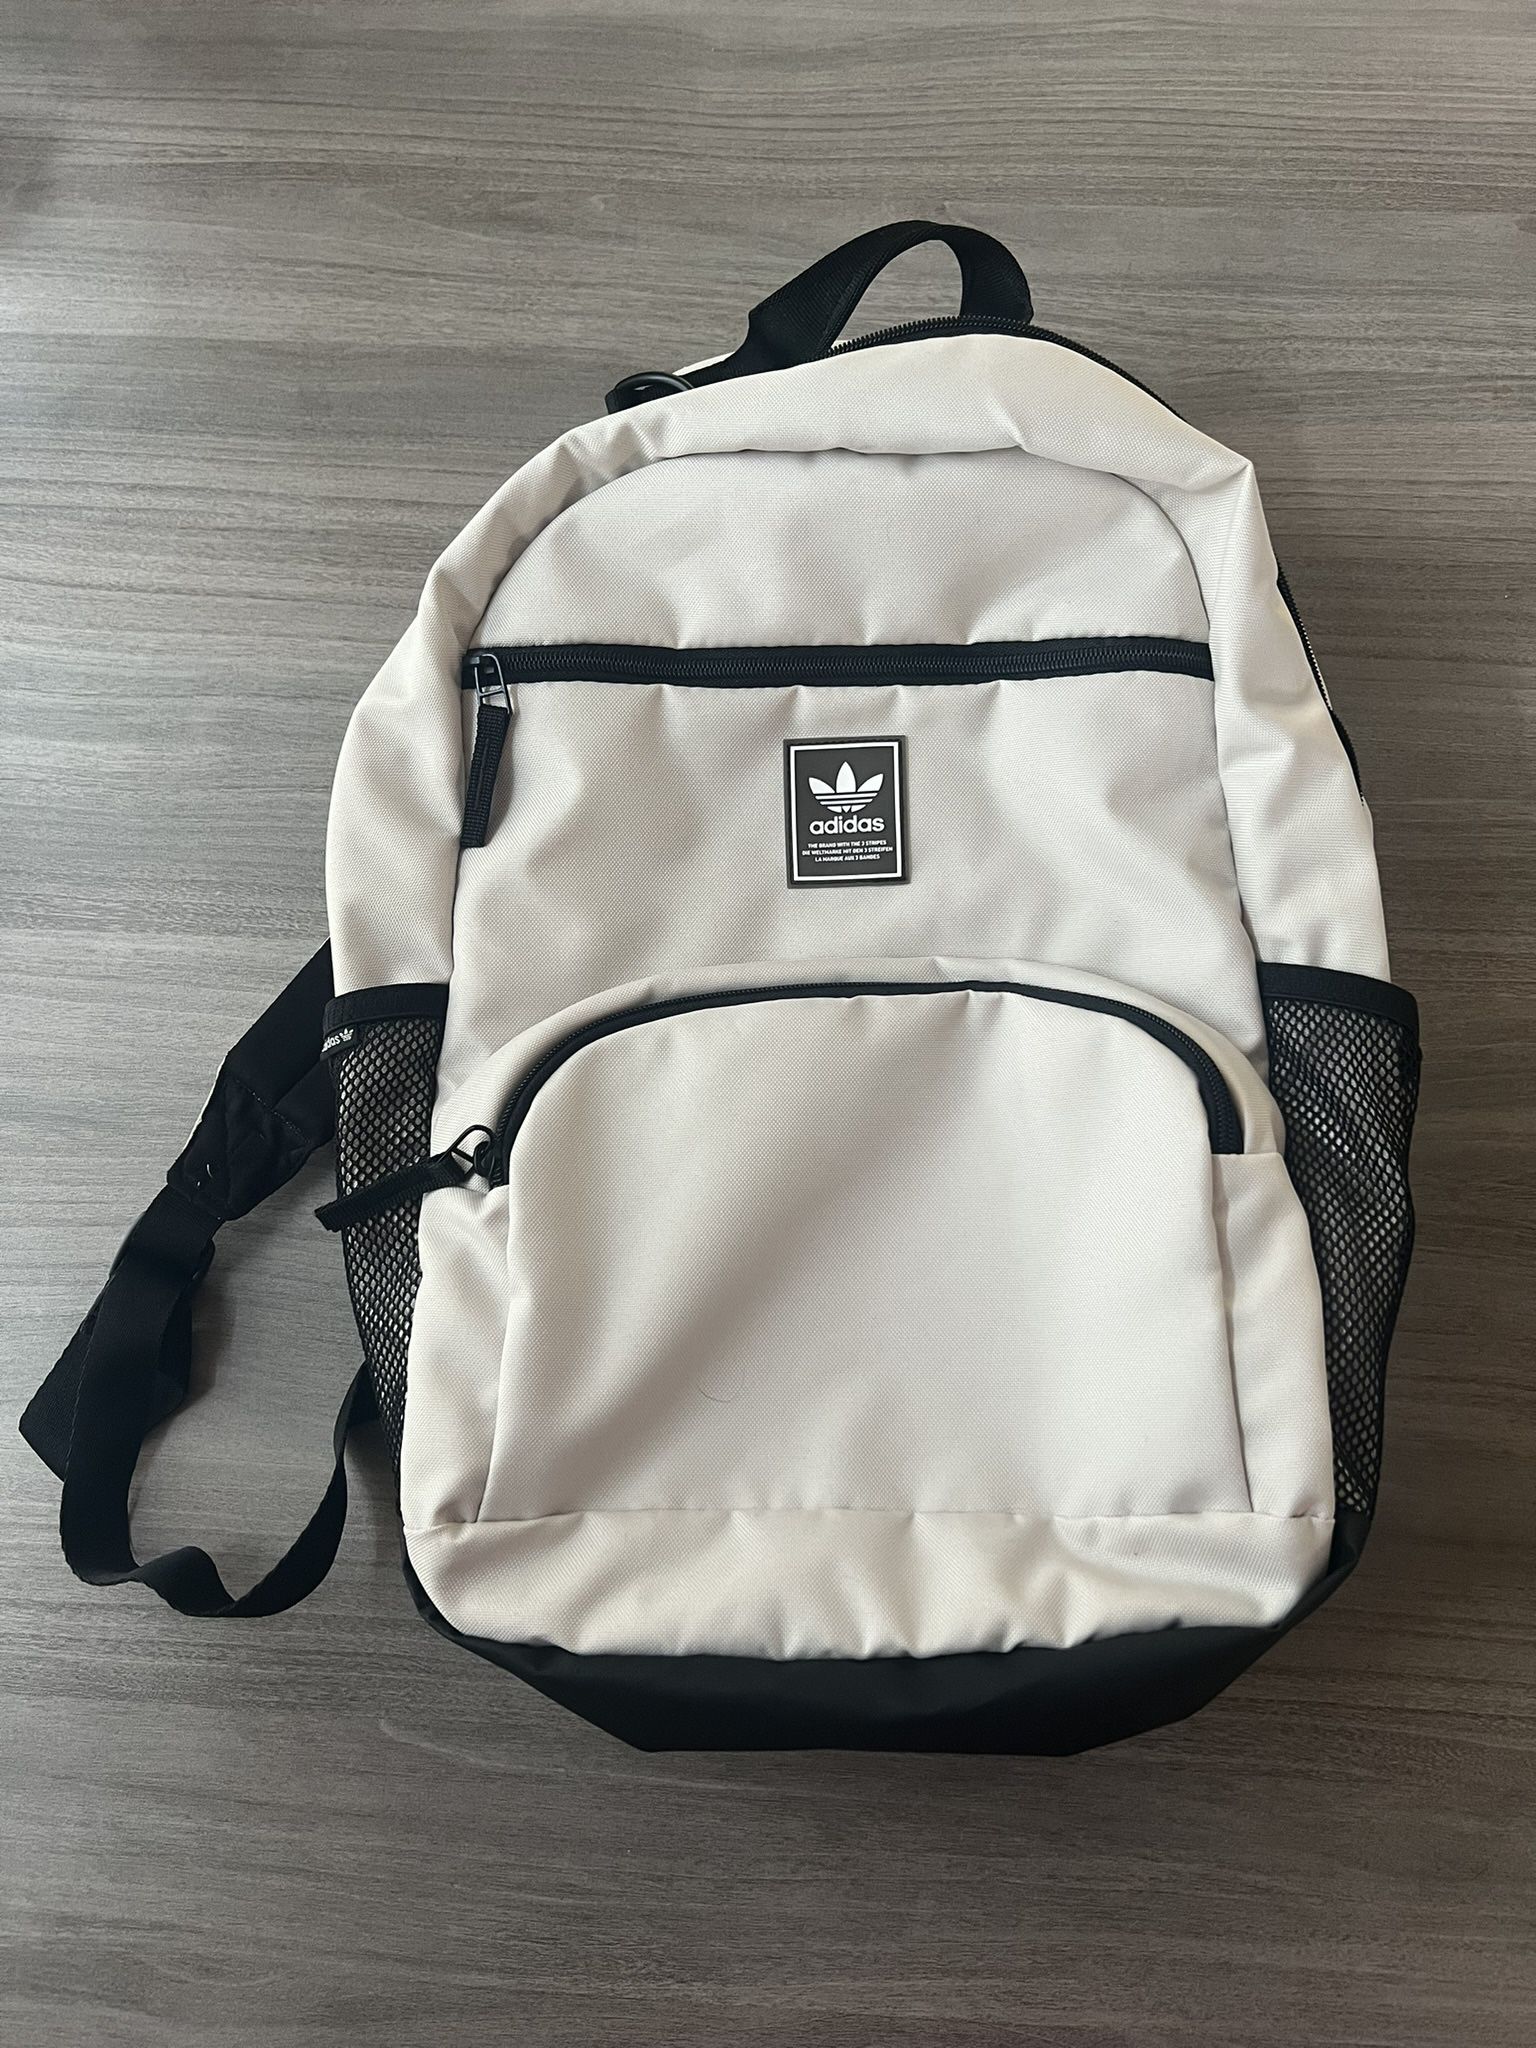 Adidas Bookbag (Cream / Beige)